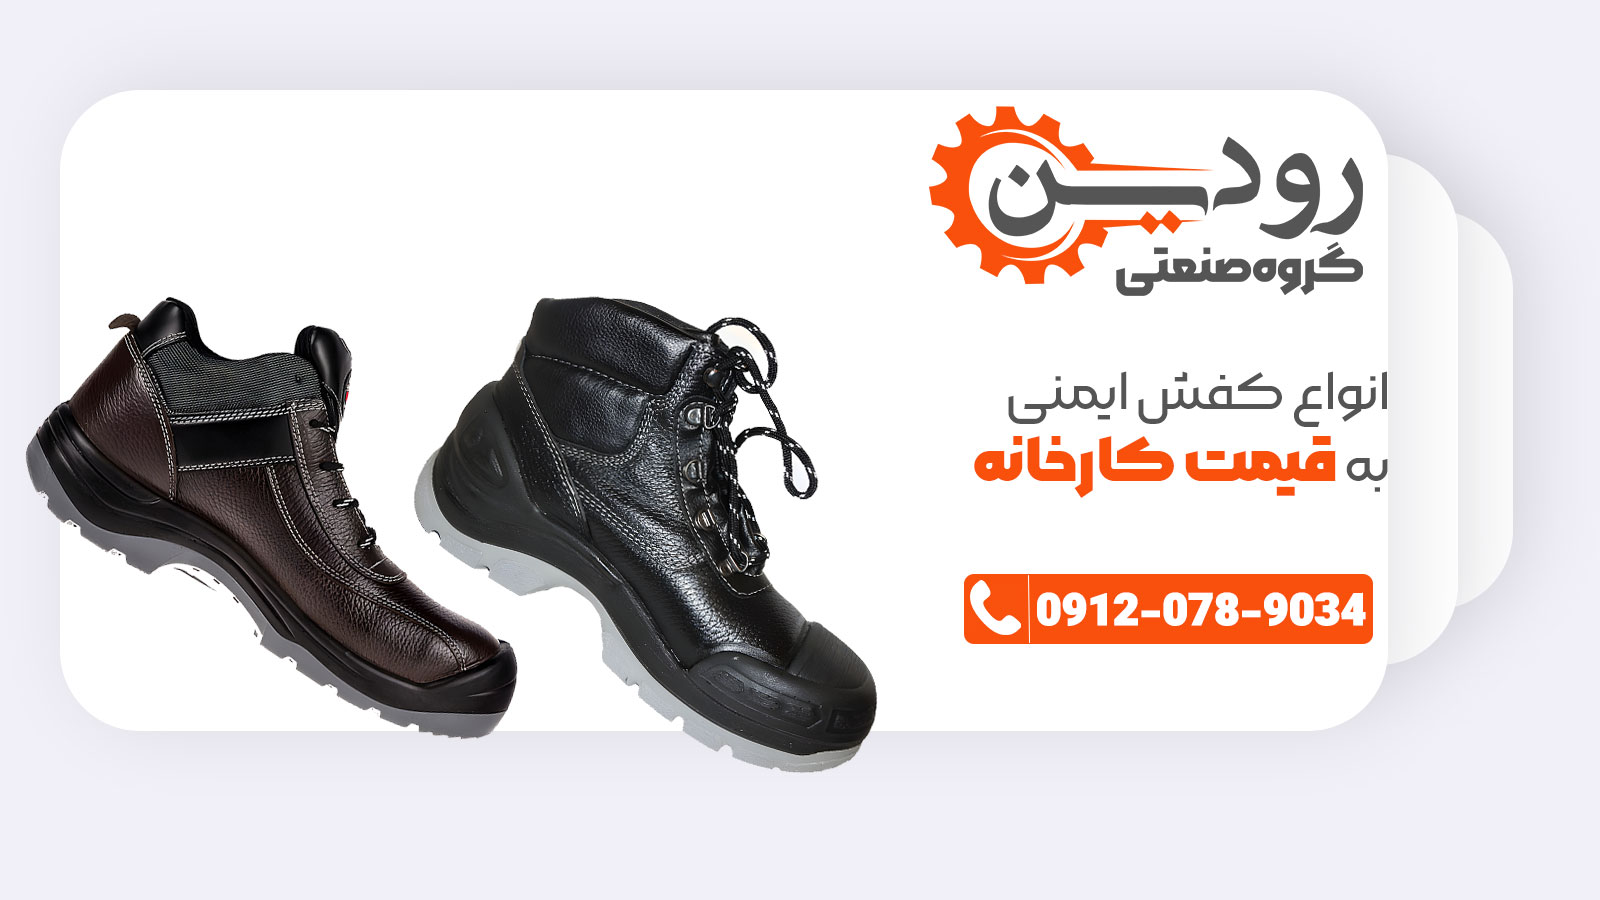 ما با تمامی کارخانجات کفش ایمنی ایران همکاری مستقیم داریم.